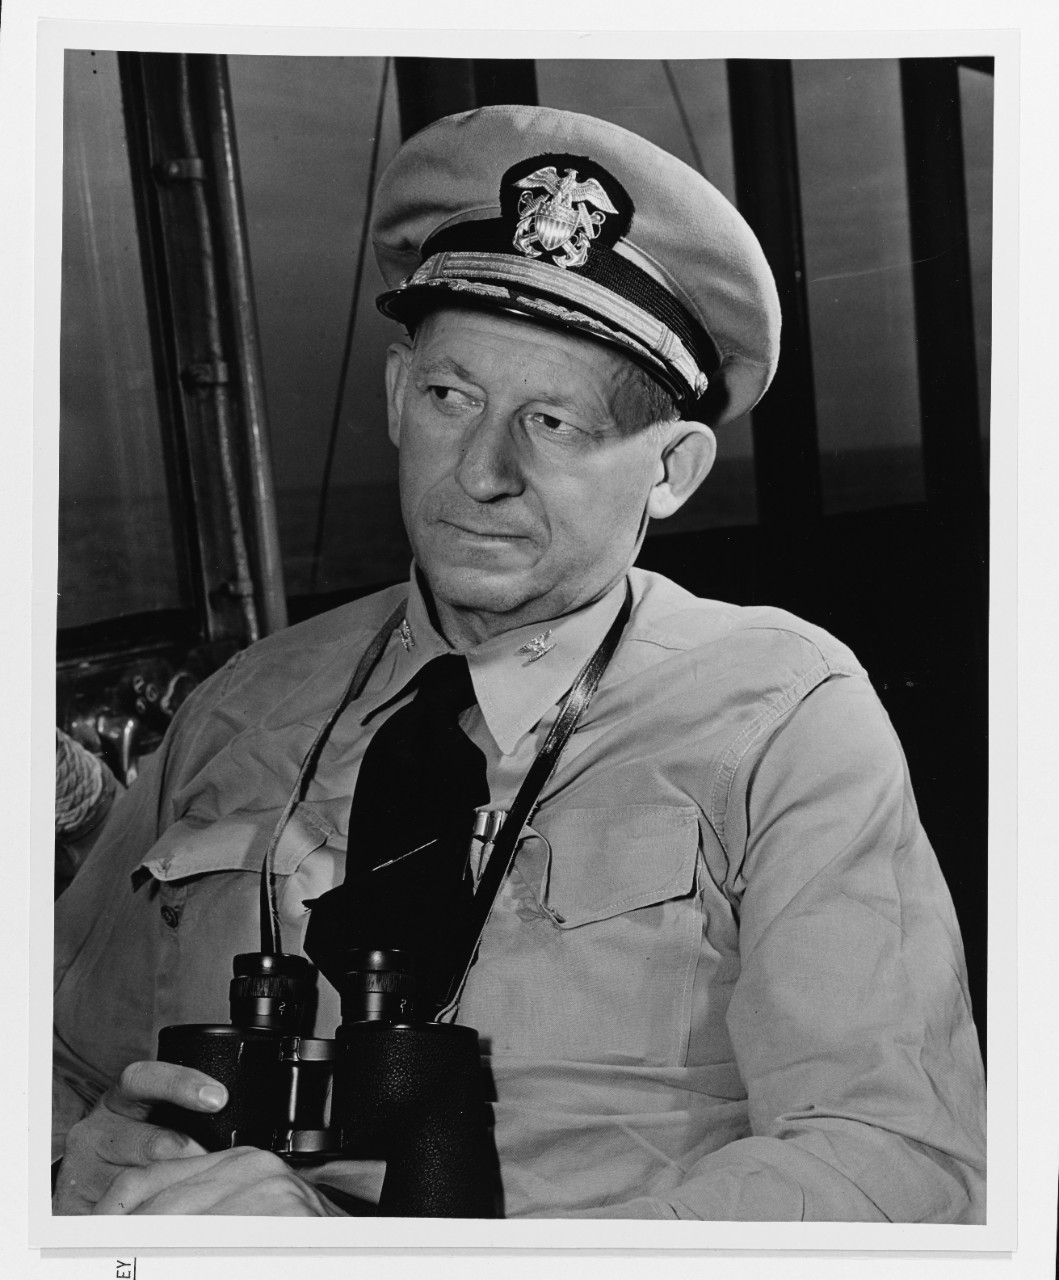 Captain Francis P. McCorkle, USN